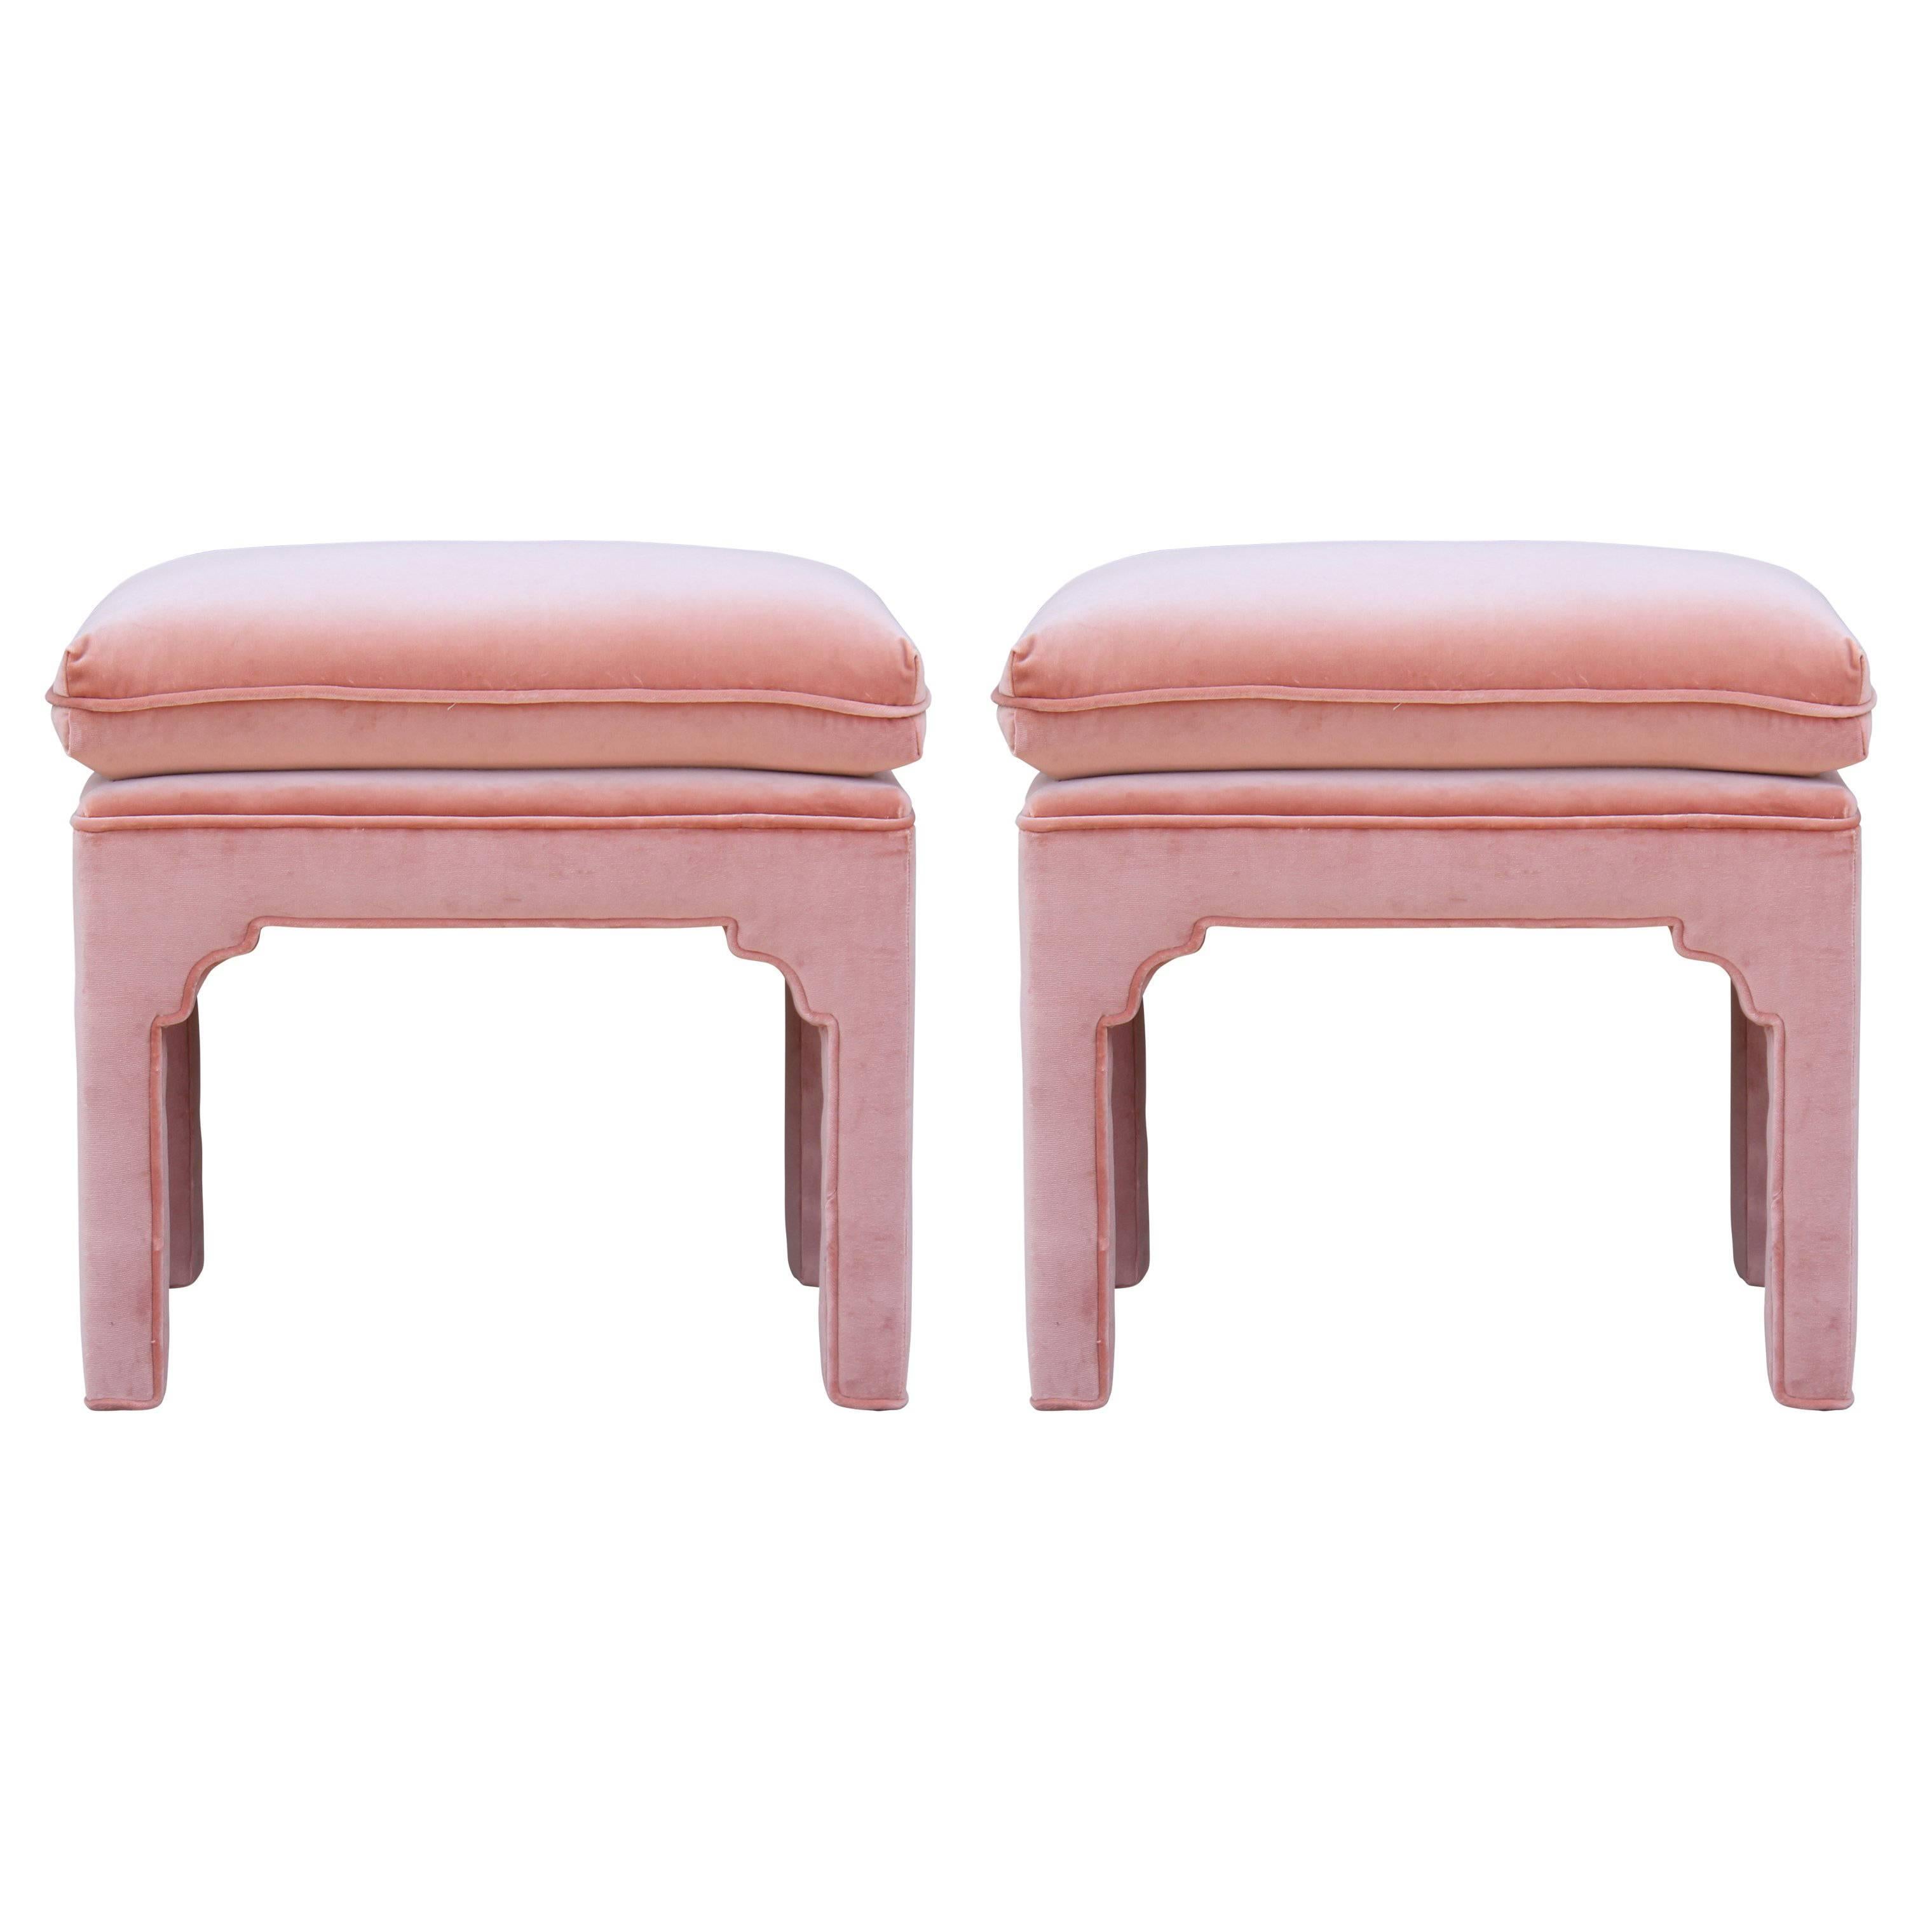 Pair of Modern Fully Upholstered Light Pink Velvet Footstools Ottomans